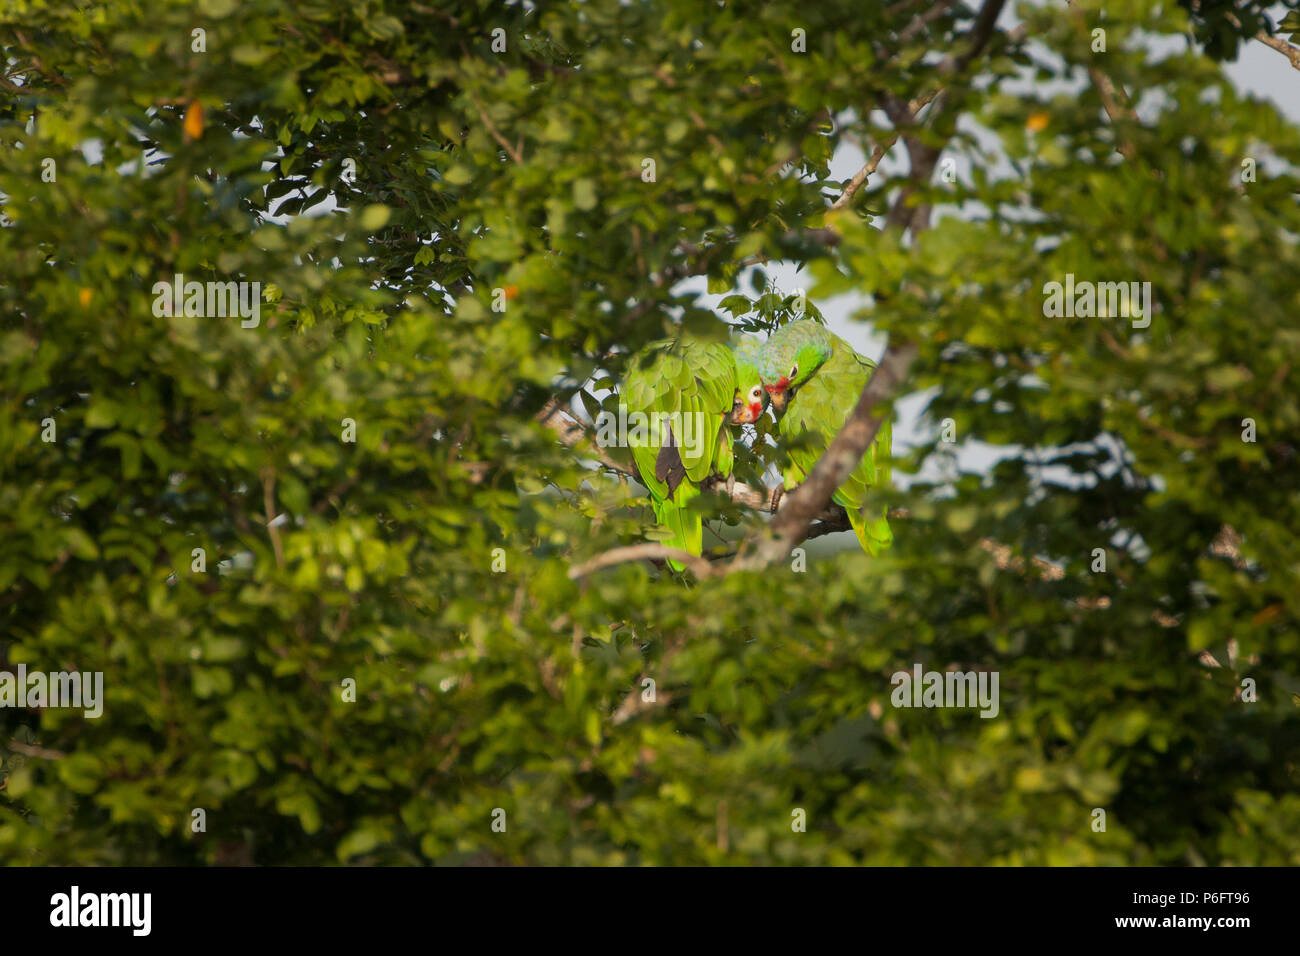 Une paire de perroquets rouges, Amazona autumnalis, dans la forêt tropicale du parc national de Soberania, République du Panama, Amérique centrale. Banque D'Images